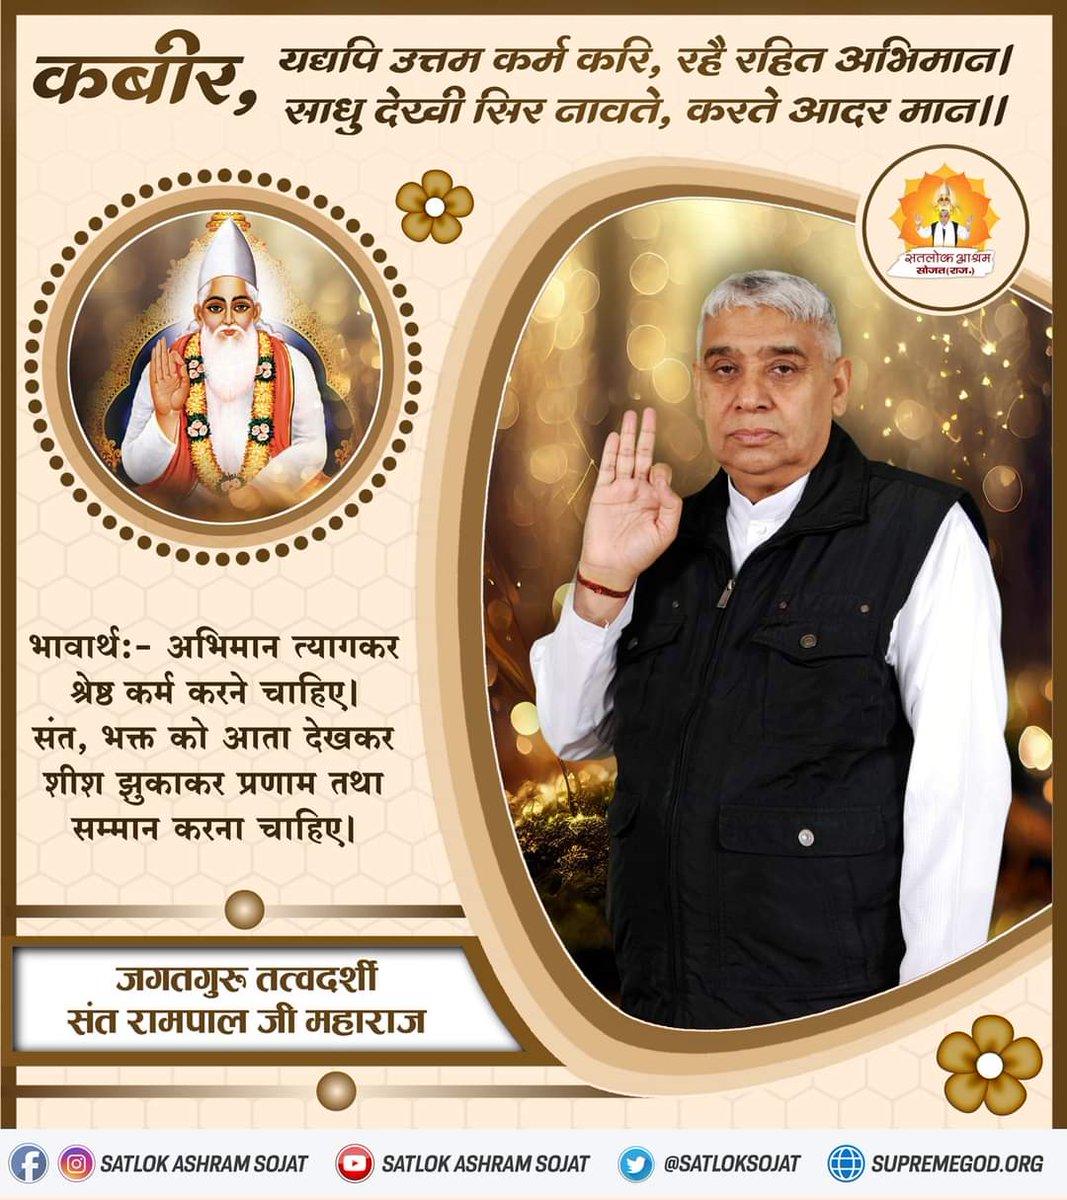 #GodNightFriday #Who_Is_AadiRam कबीर, यद्यपि उत्तम कर्म करि, रहै रहित अभिमान। साधु देखी सिर नावते, करते आदर मान|| अधिक जानकारी के लिए Download करें हमारी Official App 'Sant Rampal Ji Maharaj' Almighty God Kabir